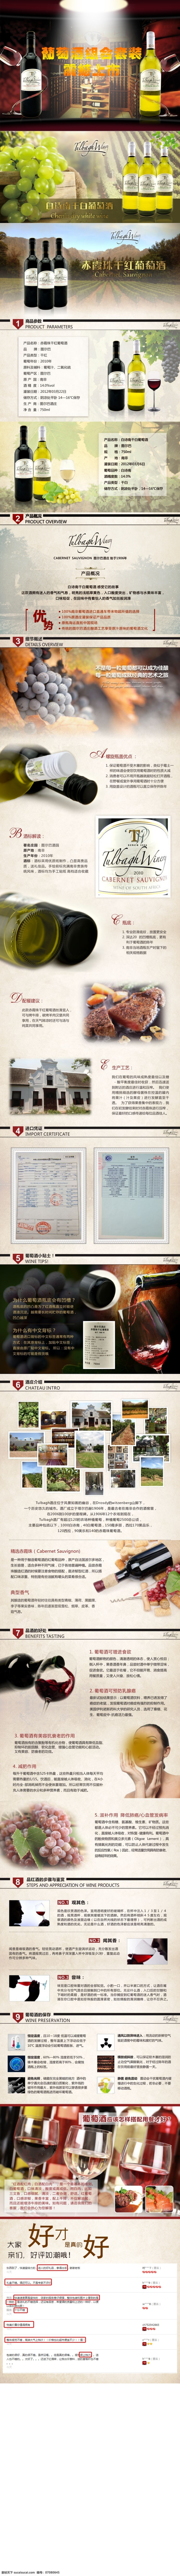 赤霞珠干红 酒水 详情 页 干红葡萄酒 酒 详情页 宝贝描述 淘宝详情制作